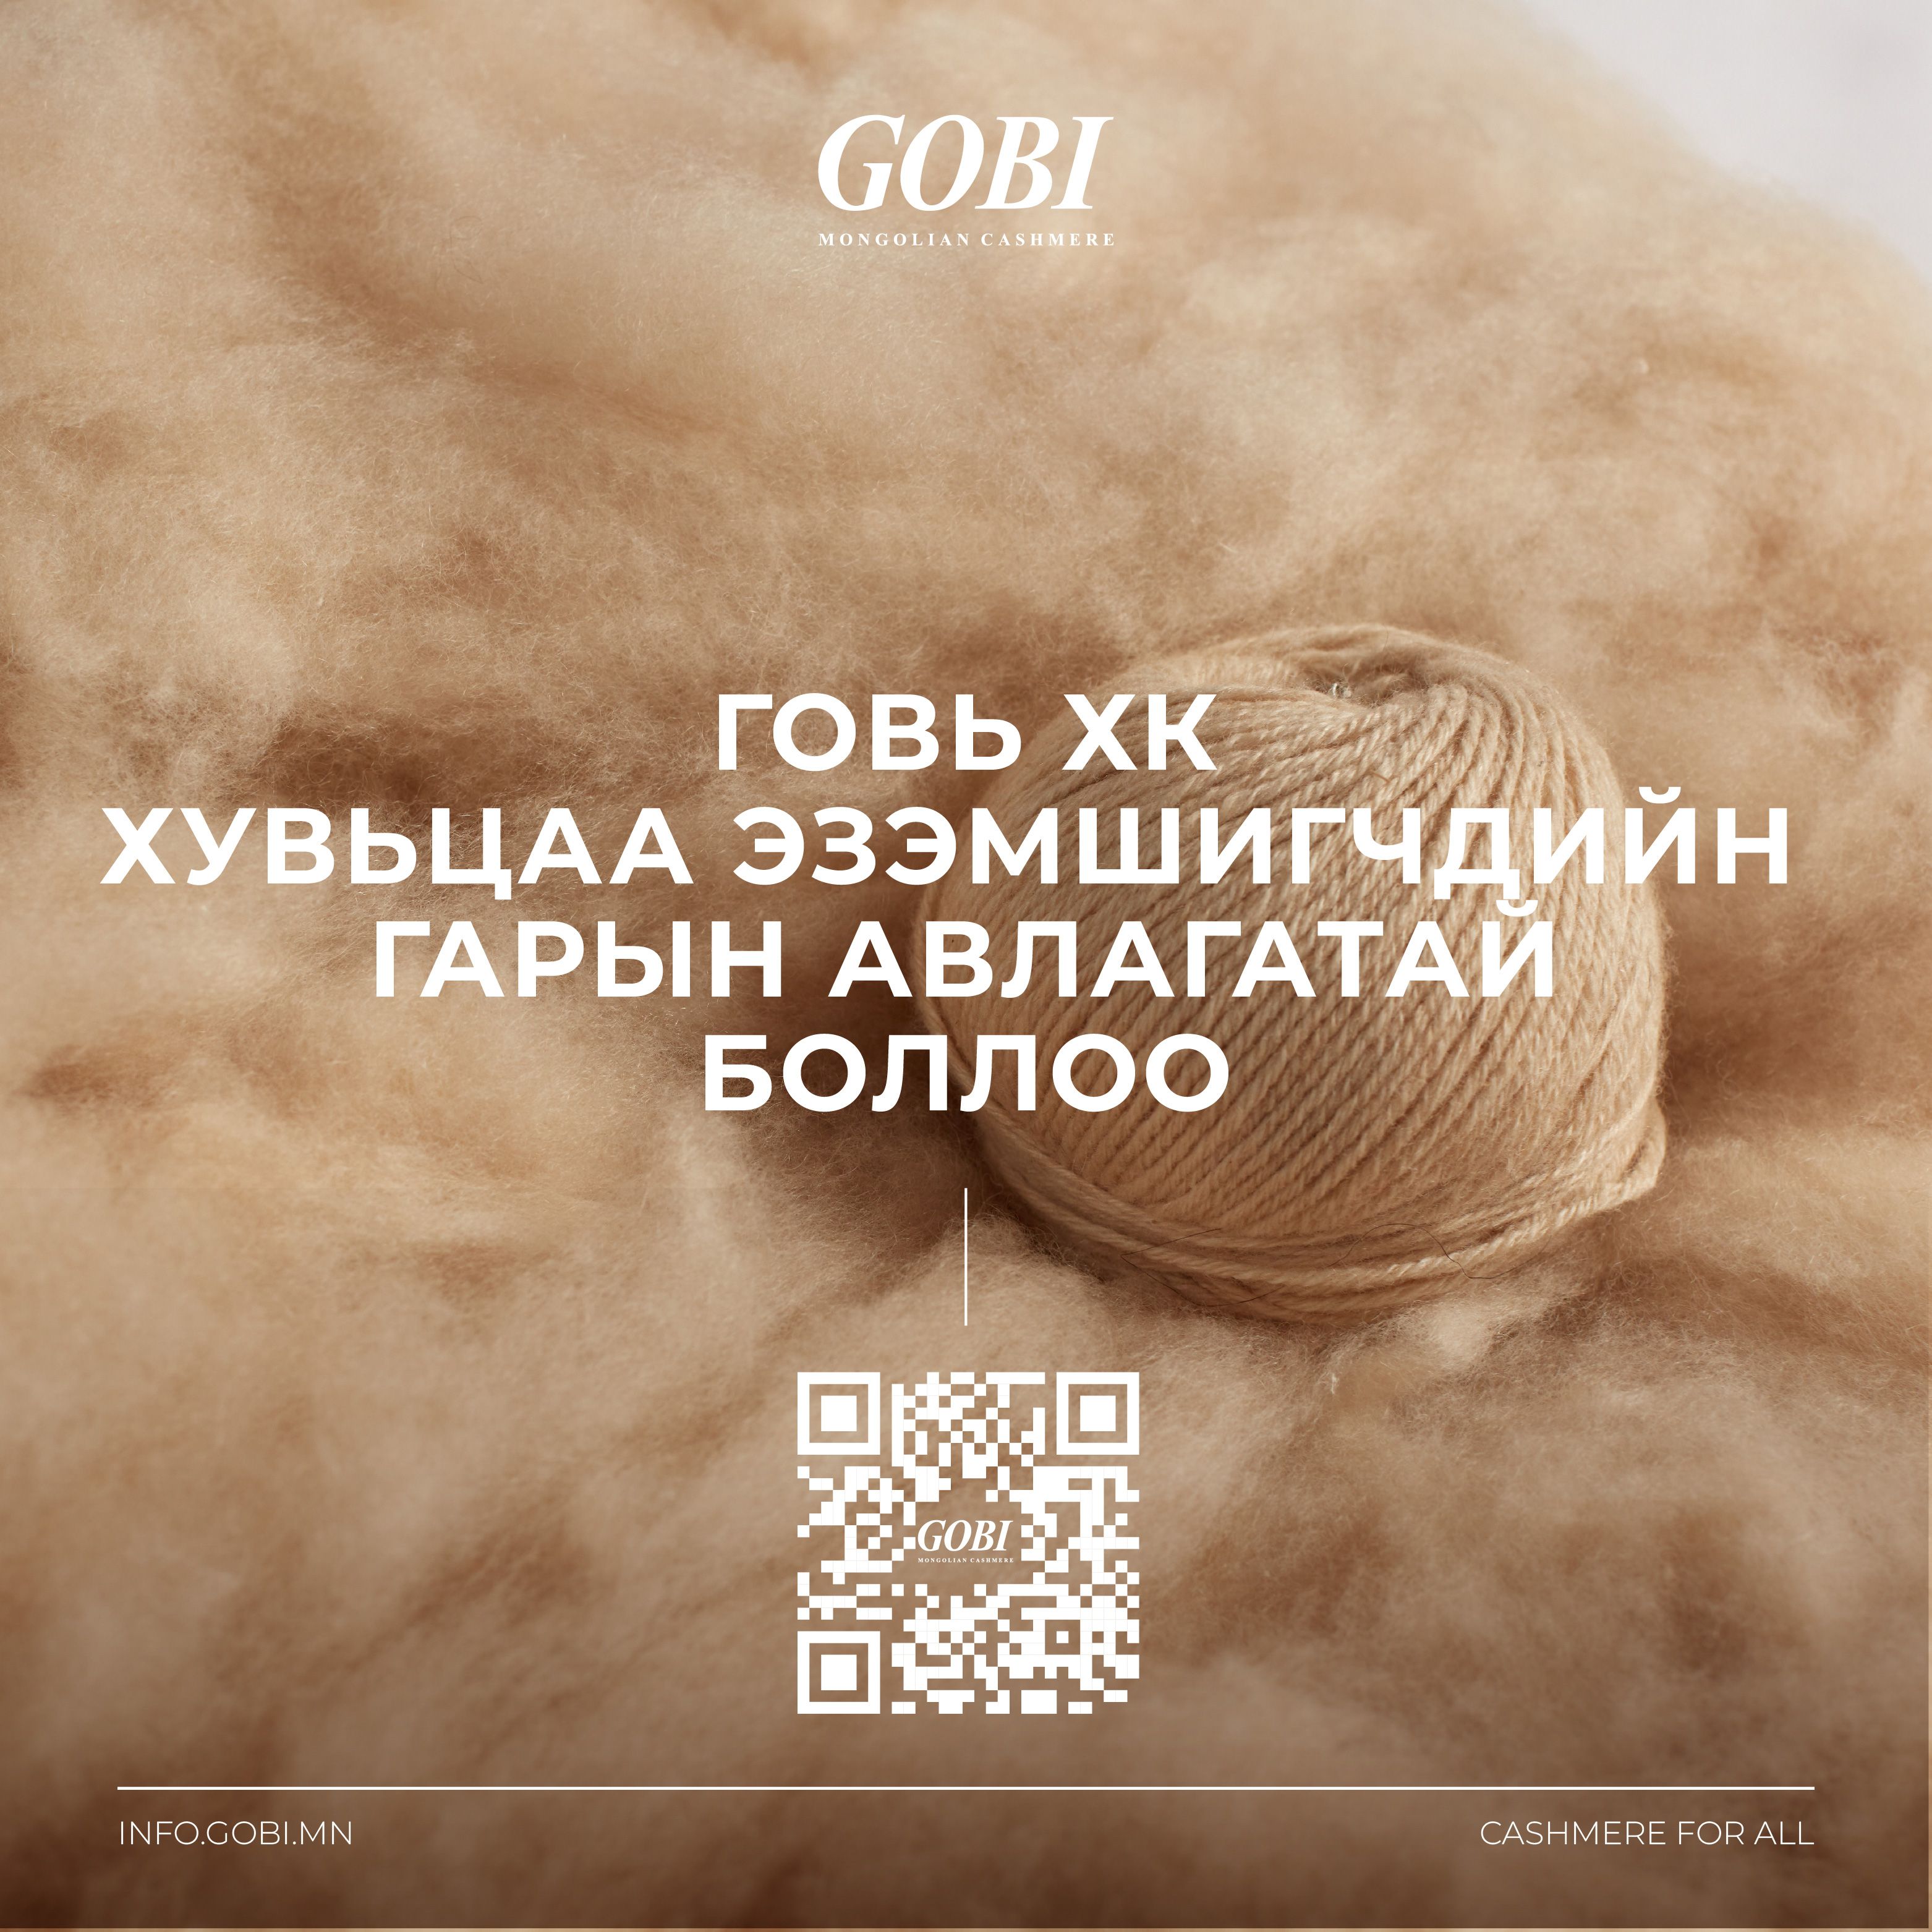 Gobi_Shareholders_SocialMediaPost-01-01 (1).jpg